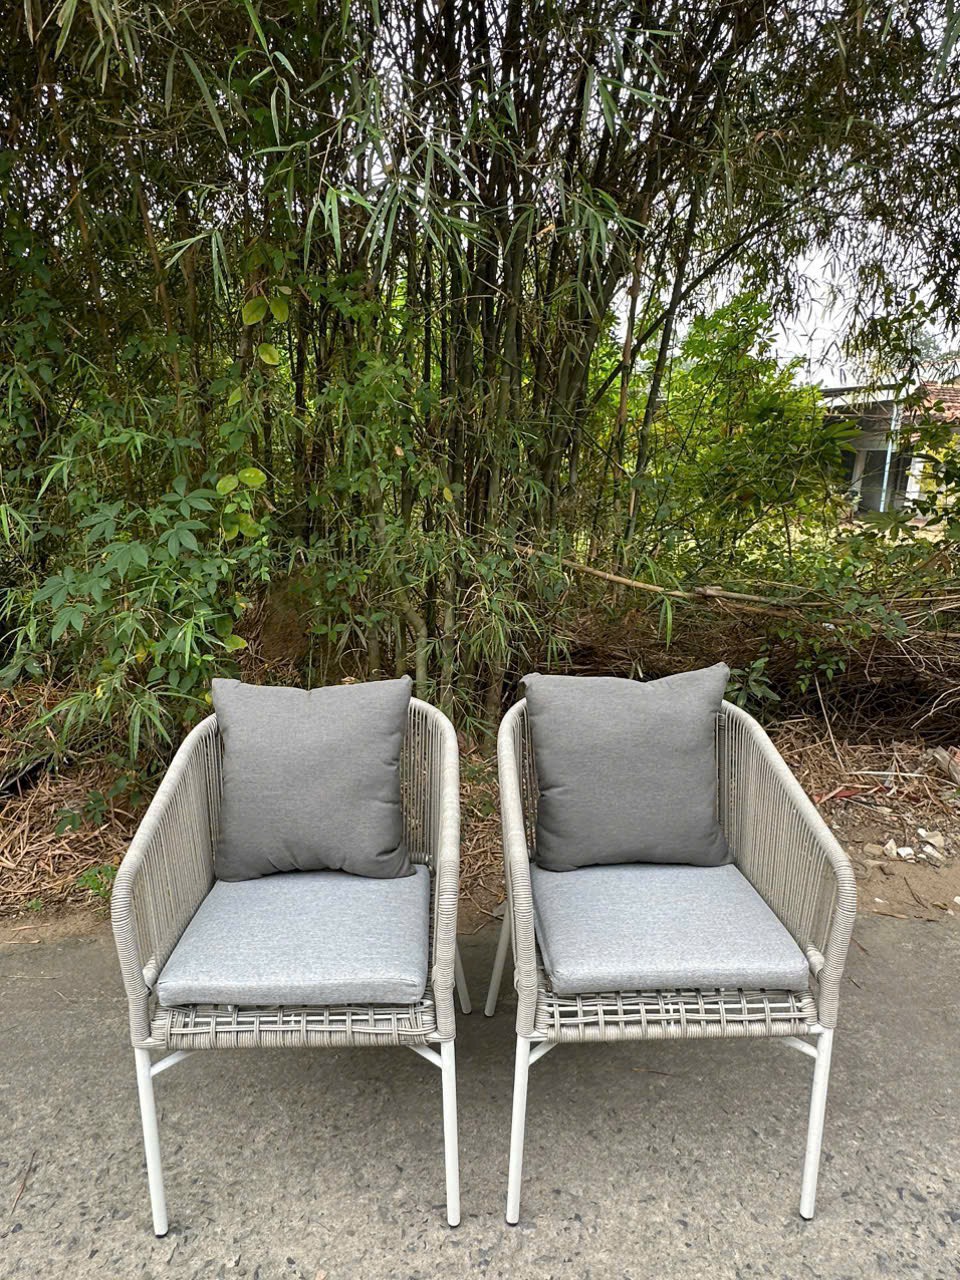 Bộ ghế mây Juno Sofa sân vườn Resort Garden Chair Outdoor